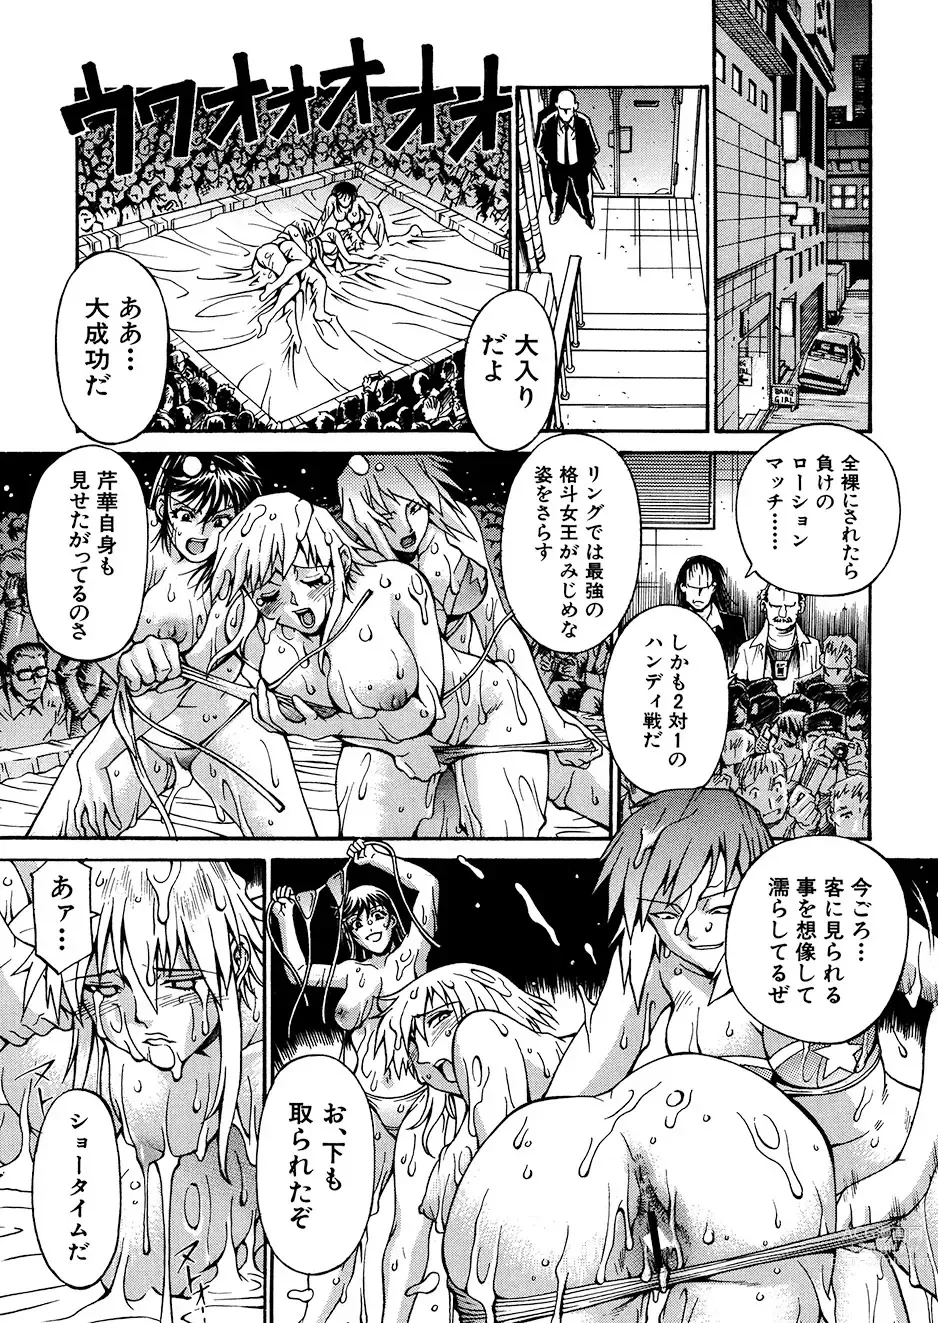 Page 164 of manga Mechiku